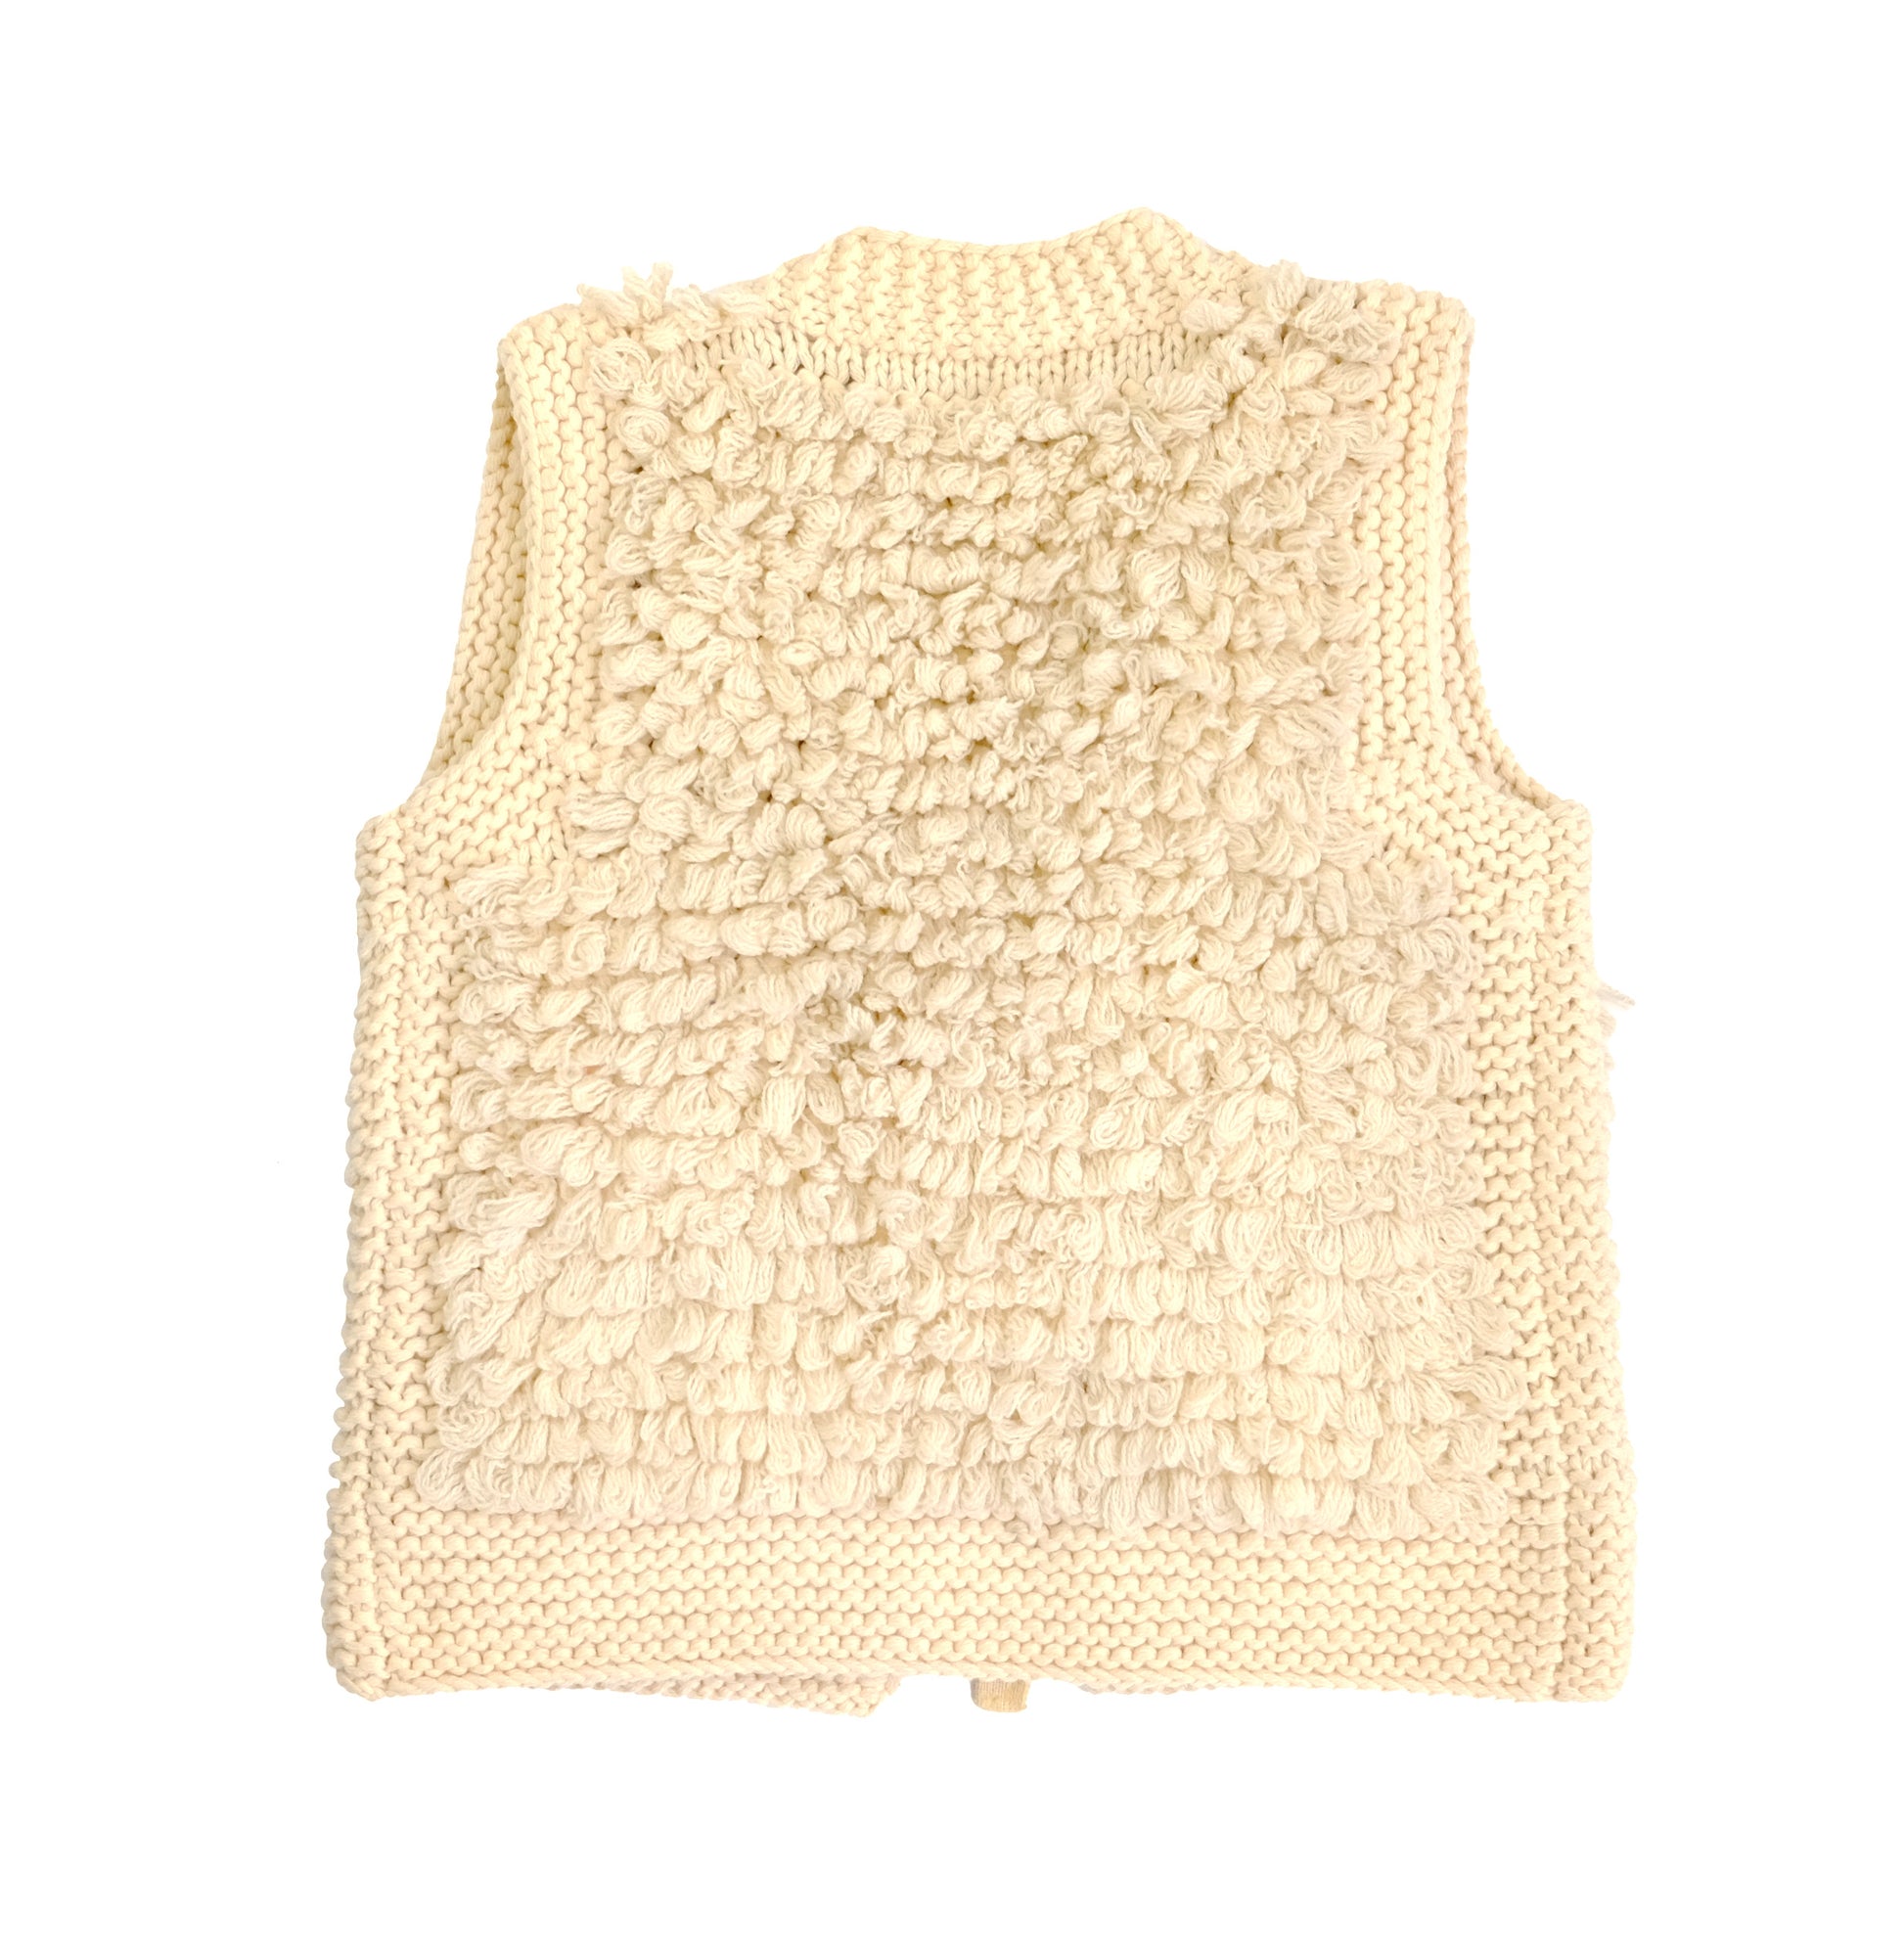 Sonia Rykiel Vintage Gilet in Looped Knitted Wool, Medium